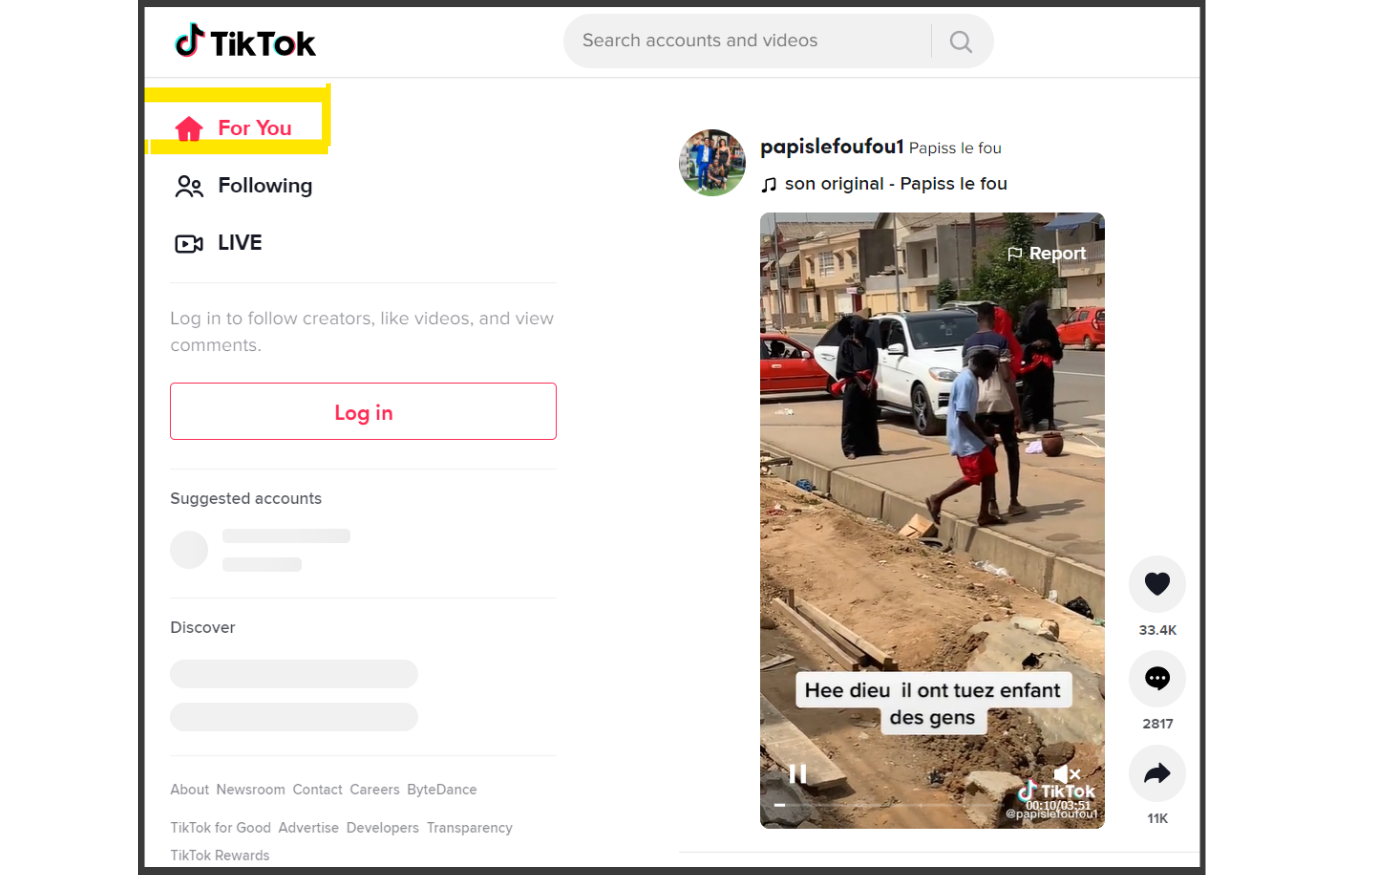 Tiktok for you image-how to become aTikTok creator 